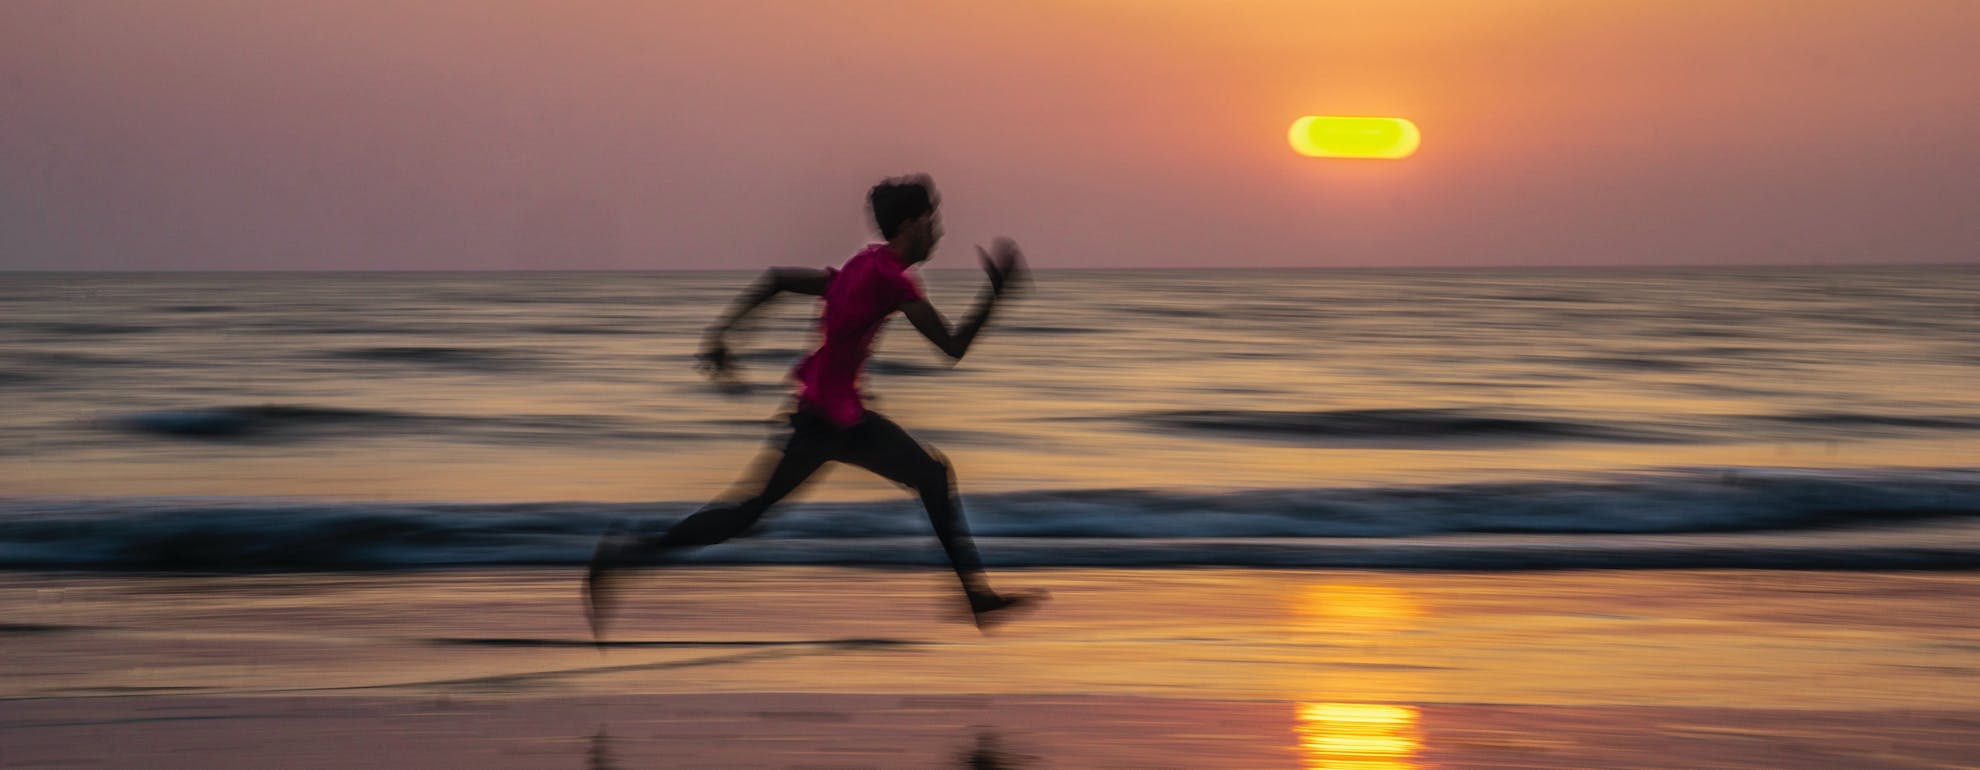 Correre sulla spiaggia: consigli e benefici per i runner